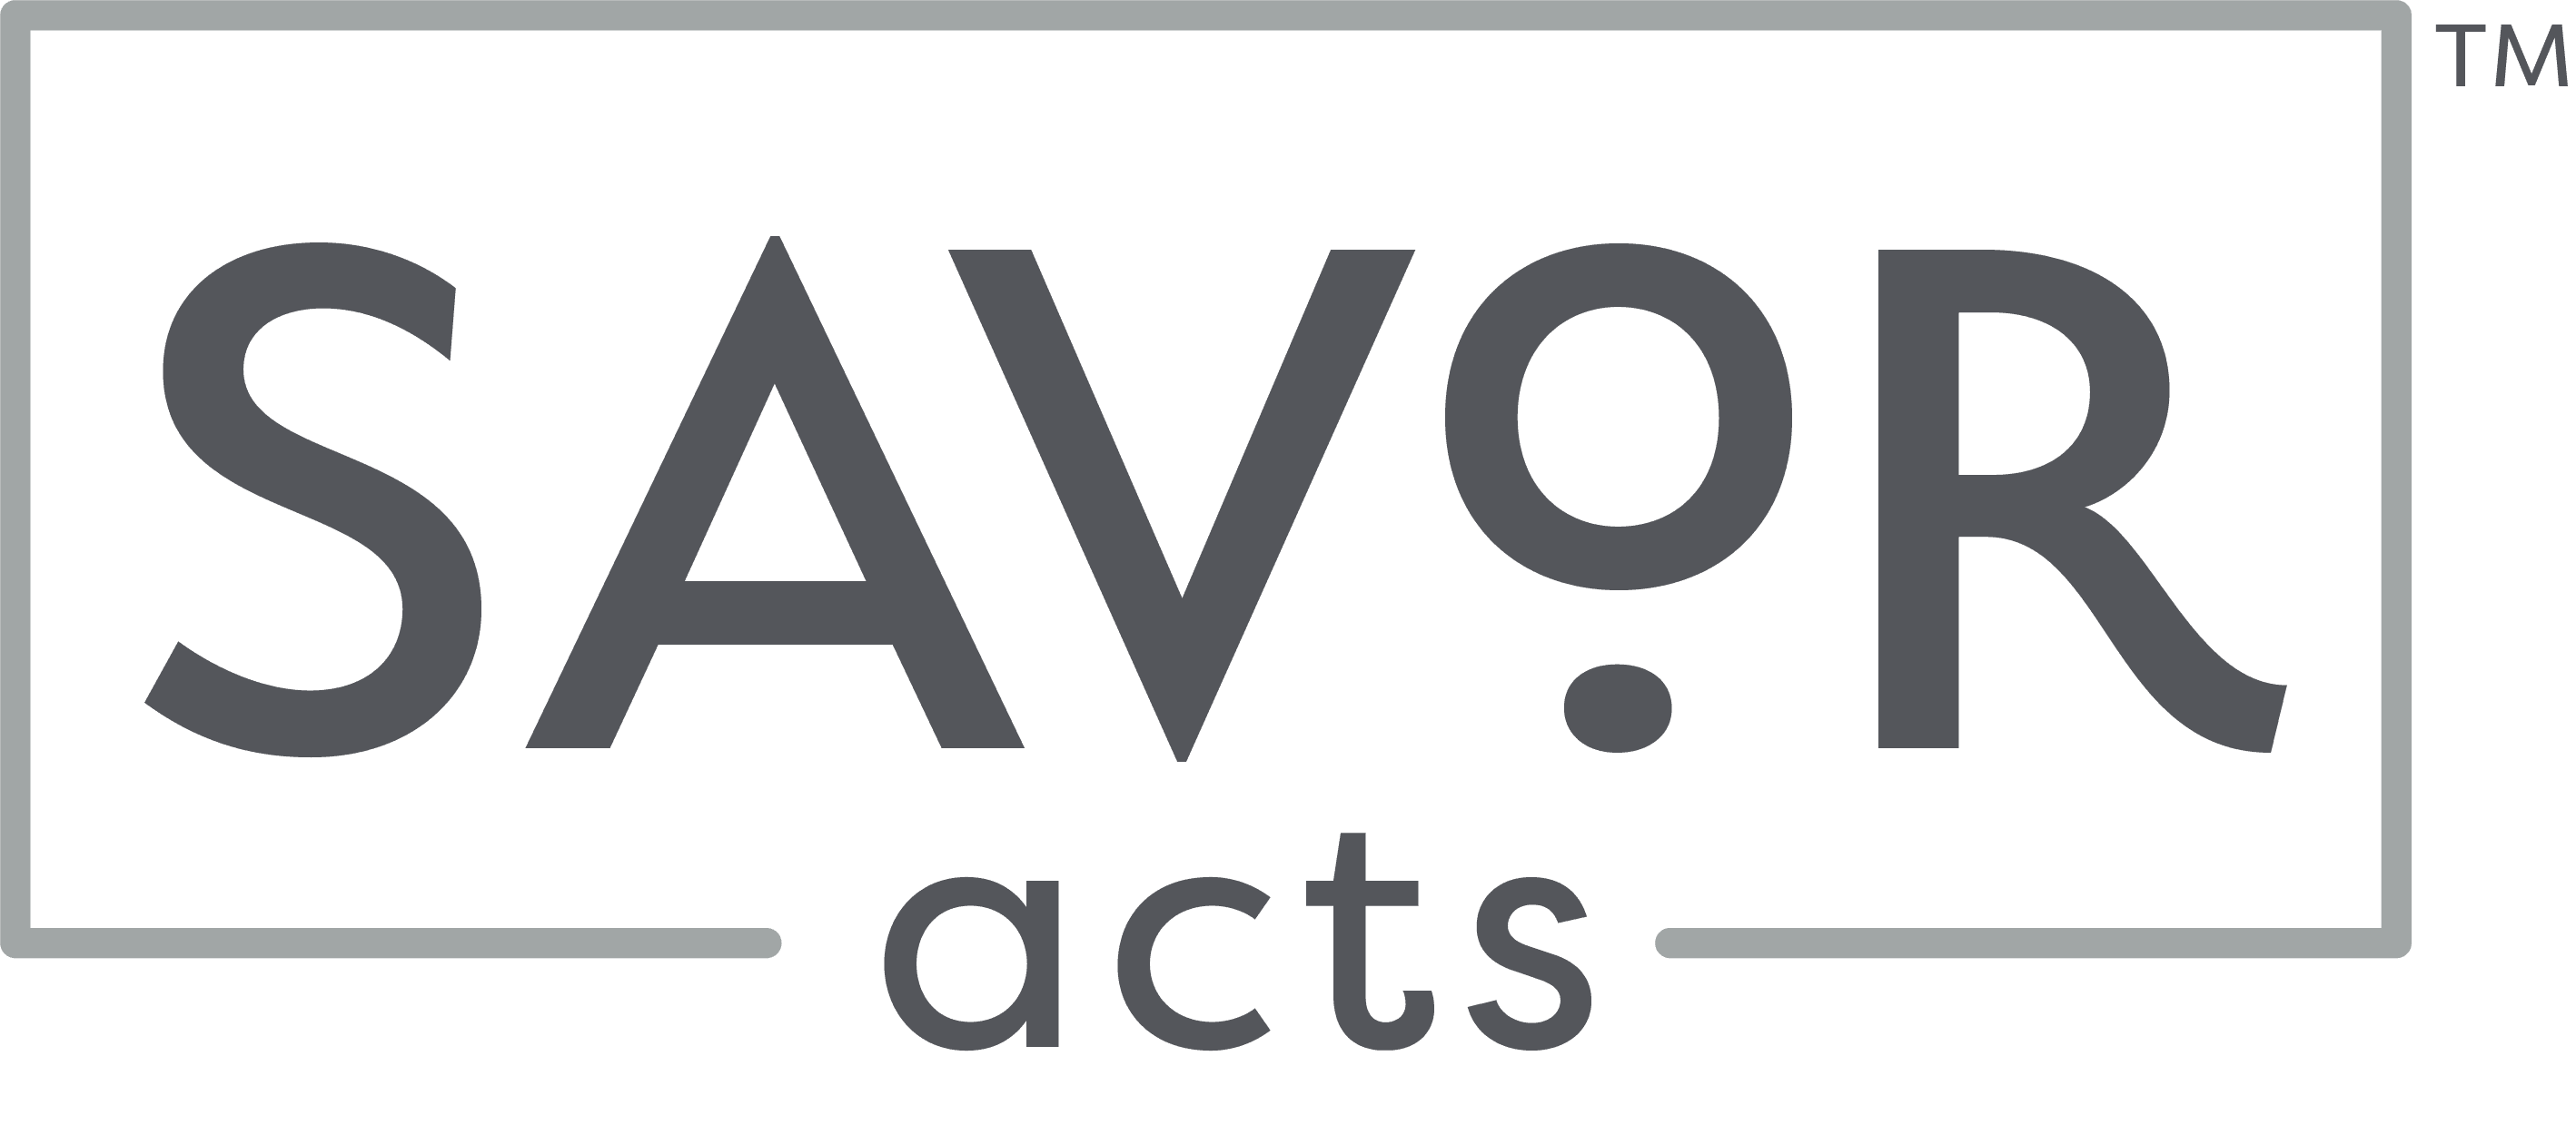 Savor Acts